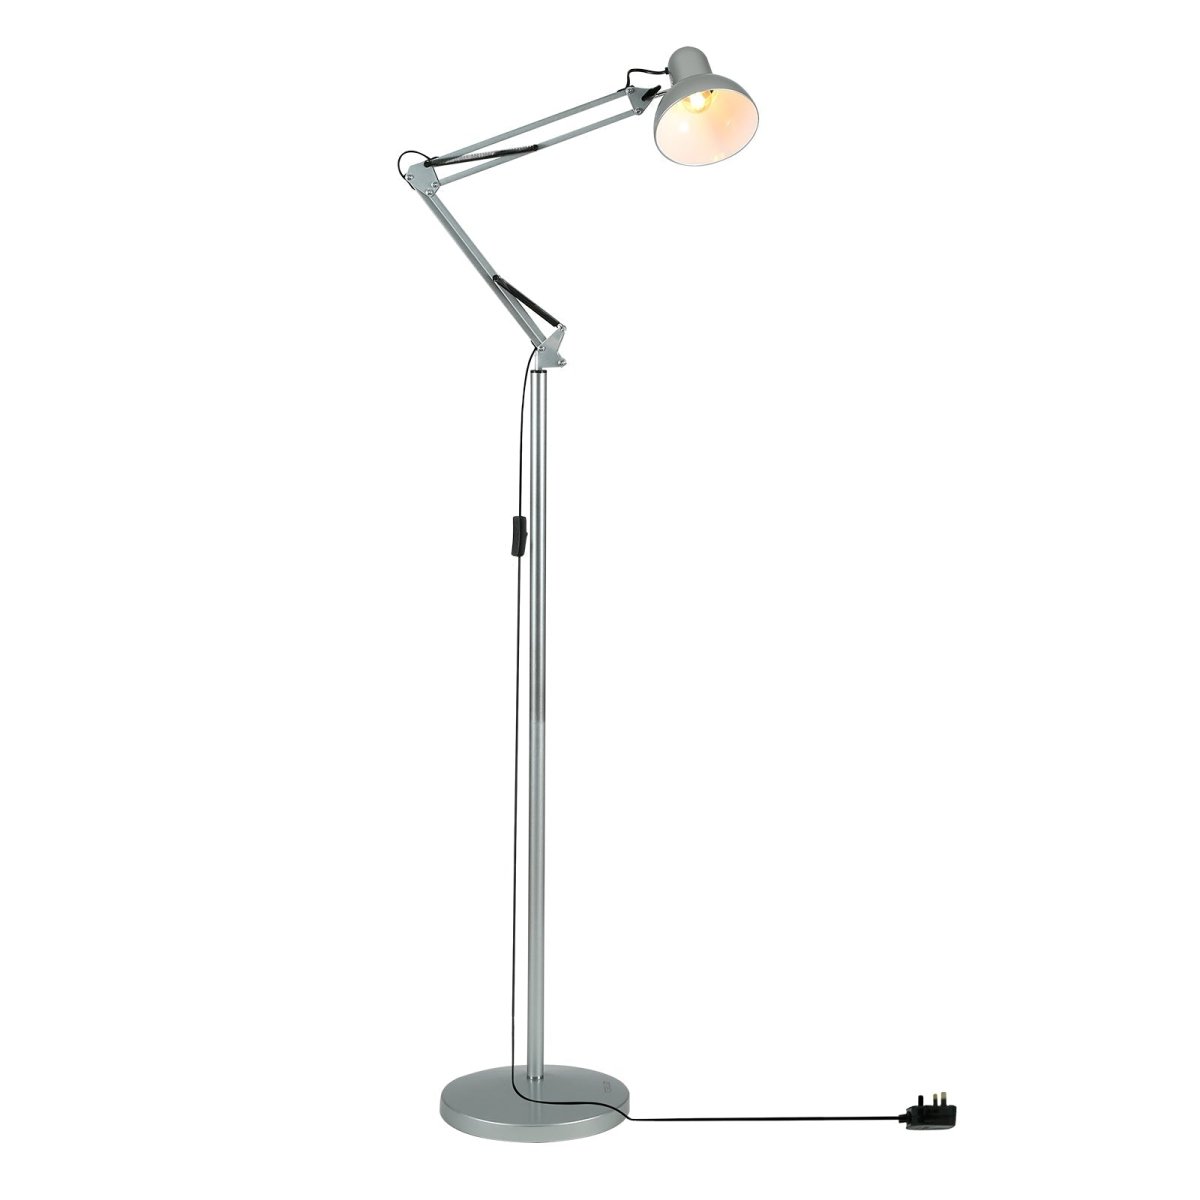 Main image of Swing Arm Architect Model Floor Lamp E27 Silver | TEKLED 130-03355